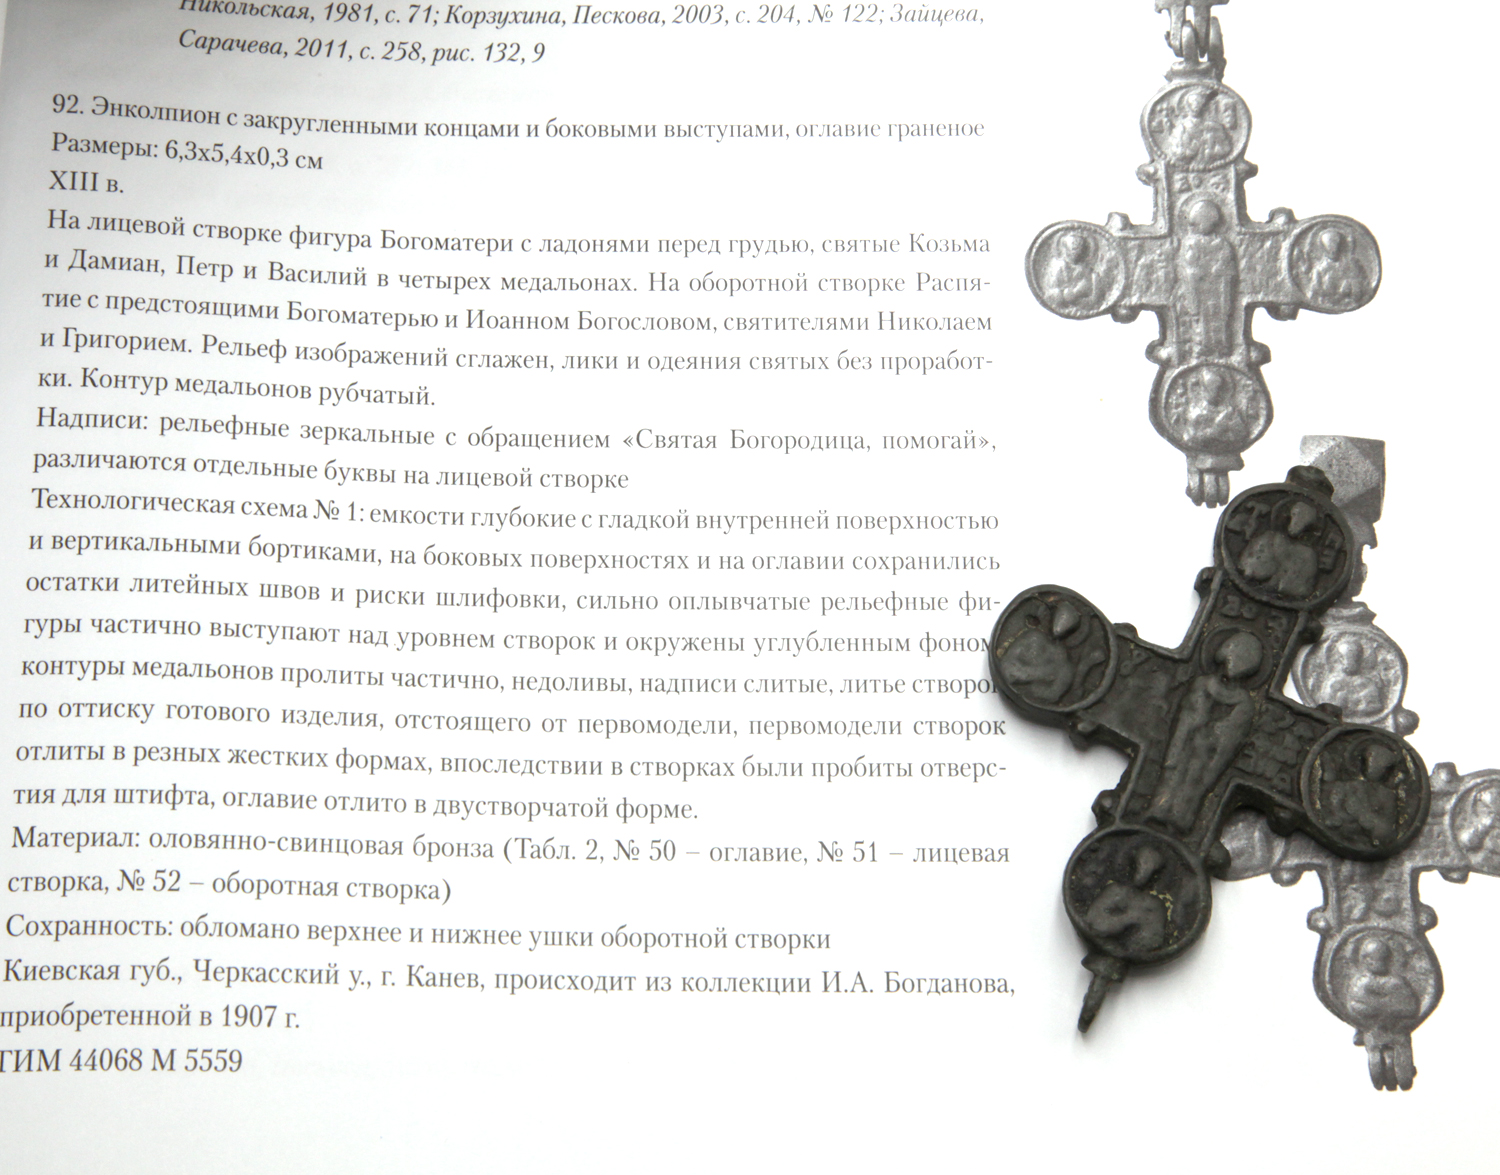 Лицевая створка древнего креста энколпиона с сюжетом - Святая Богородица, помогай. Древняя Русь XIII век